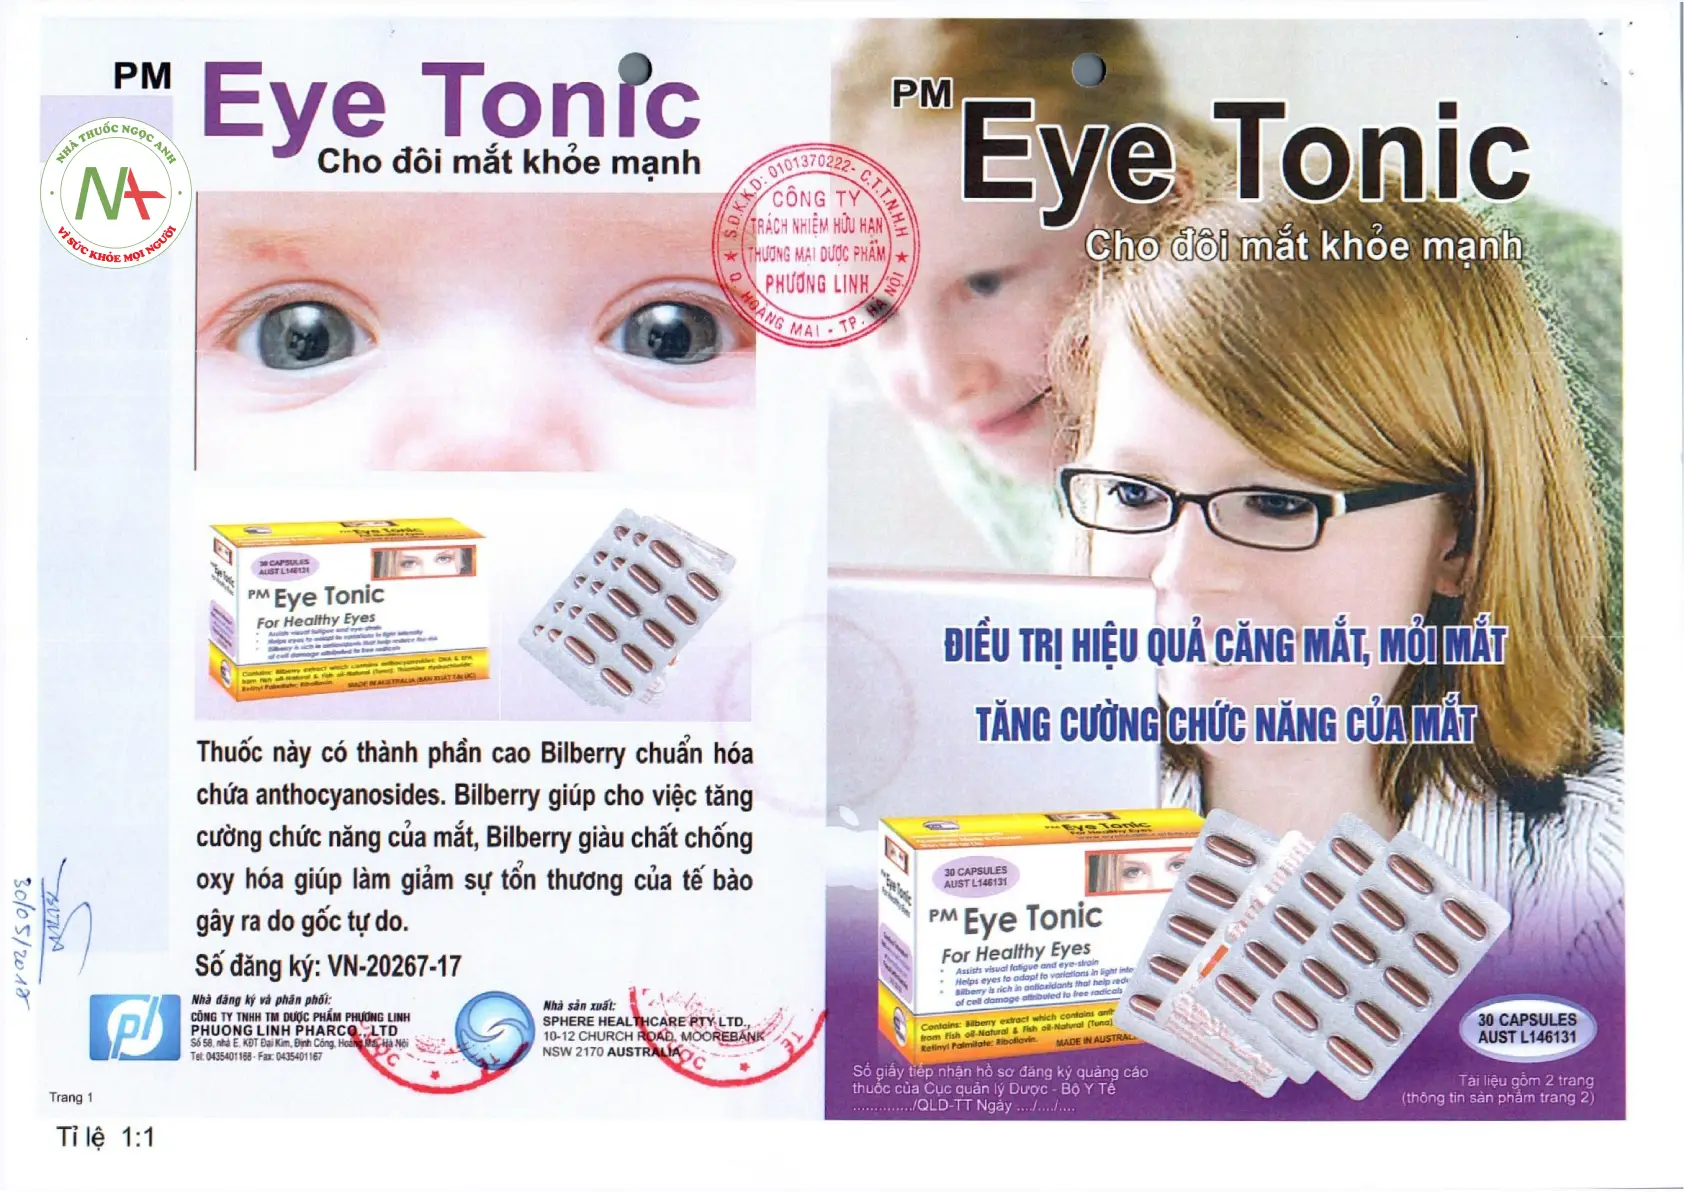 PM Eye Tonic